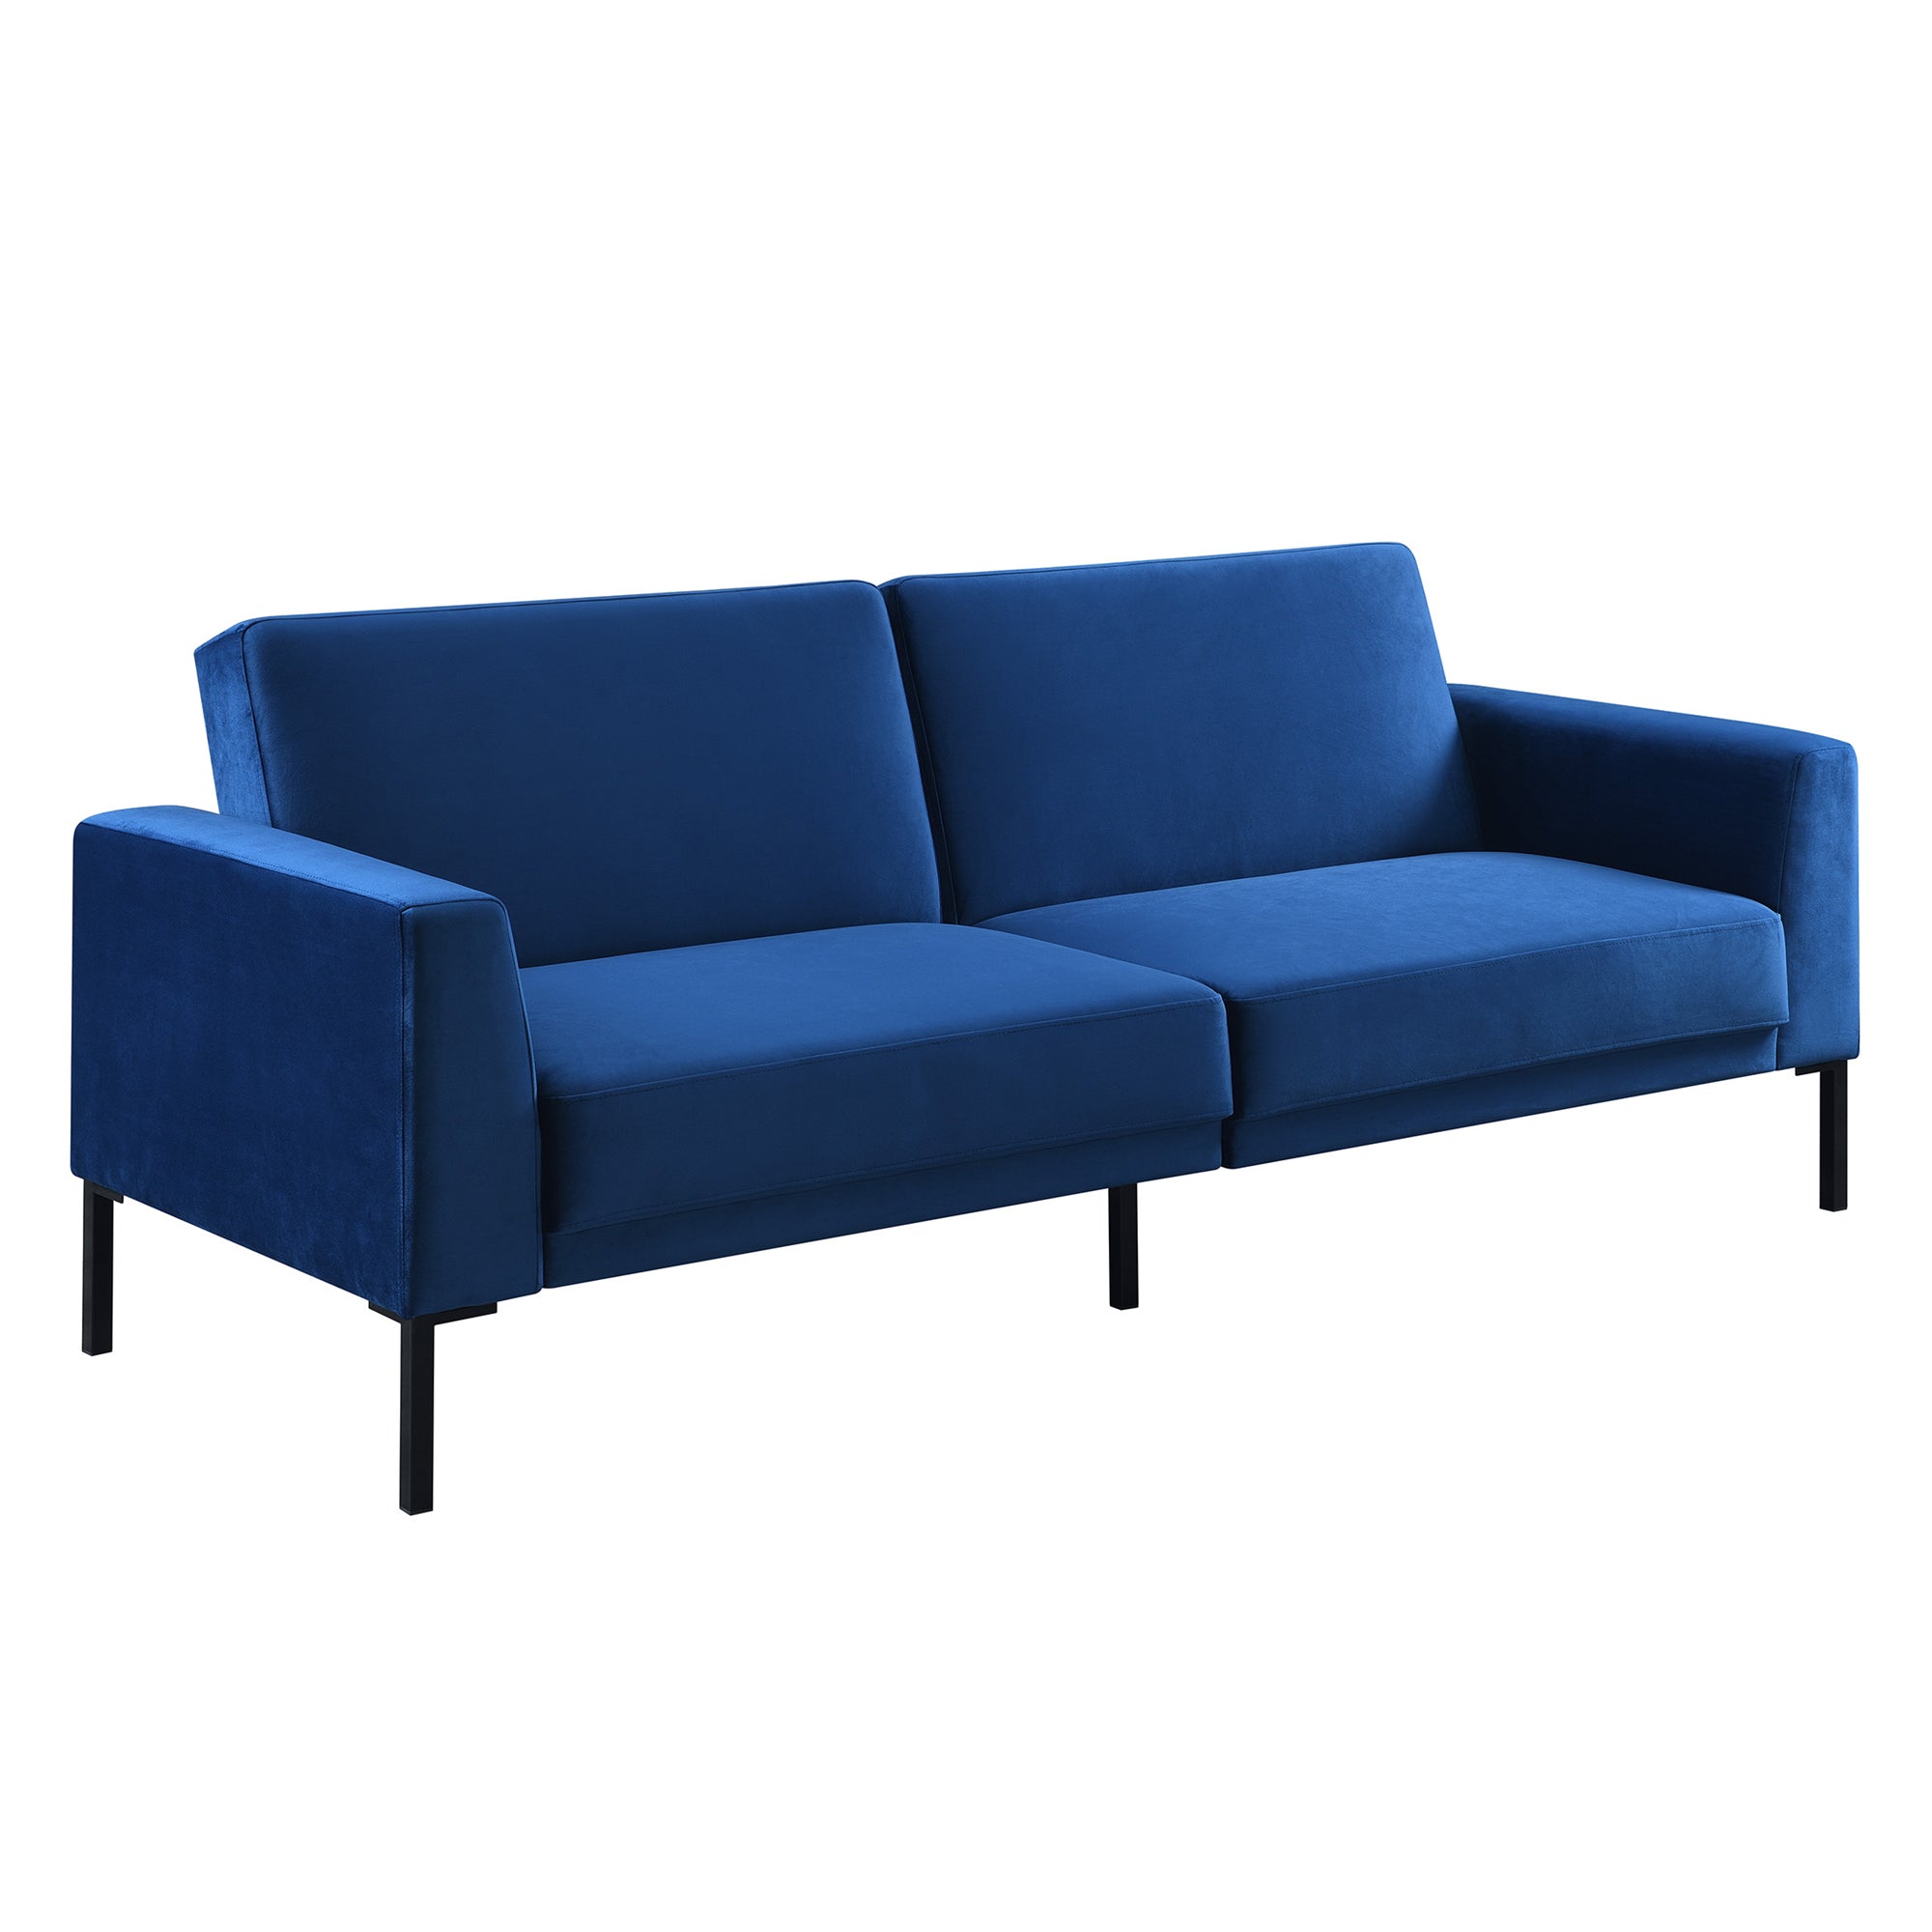 Velvet Upholstered Modern Convertible Folding Futon Sofa Bed for Compact Living Space, Apartment, Dorm-Boyel Living